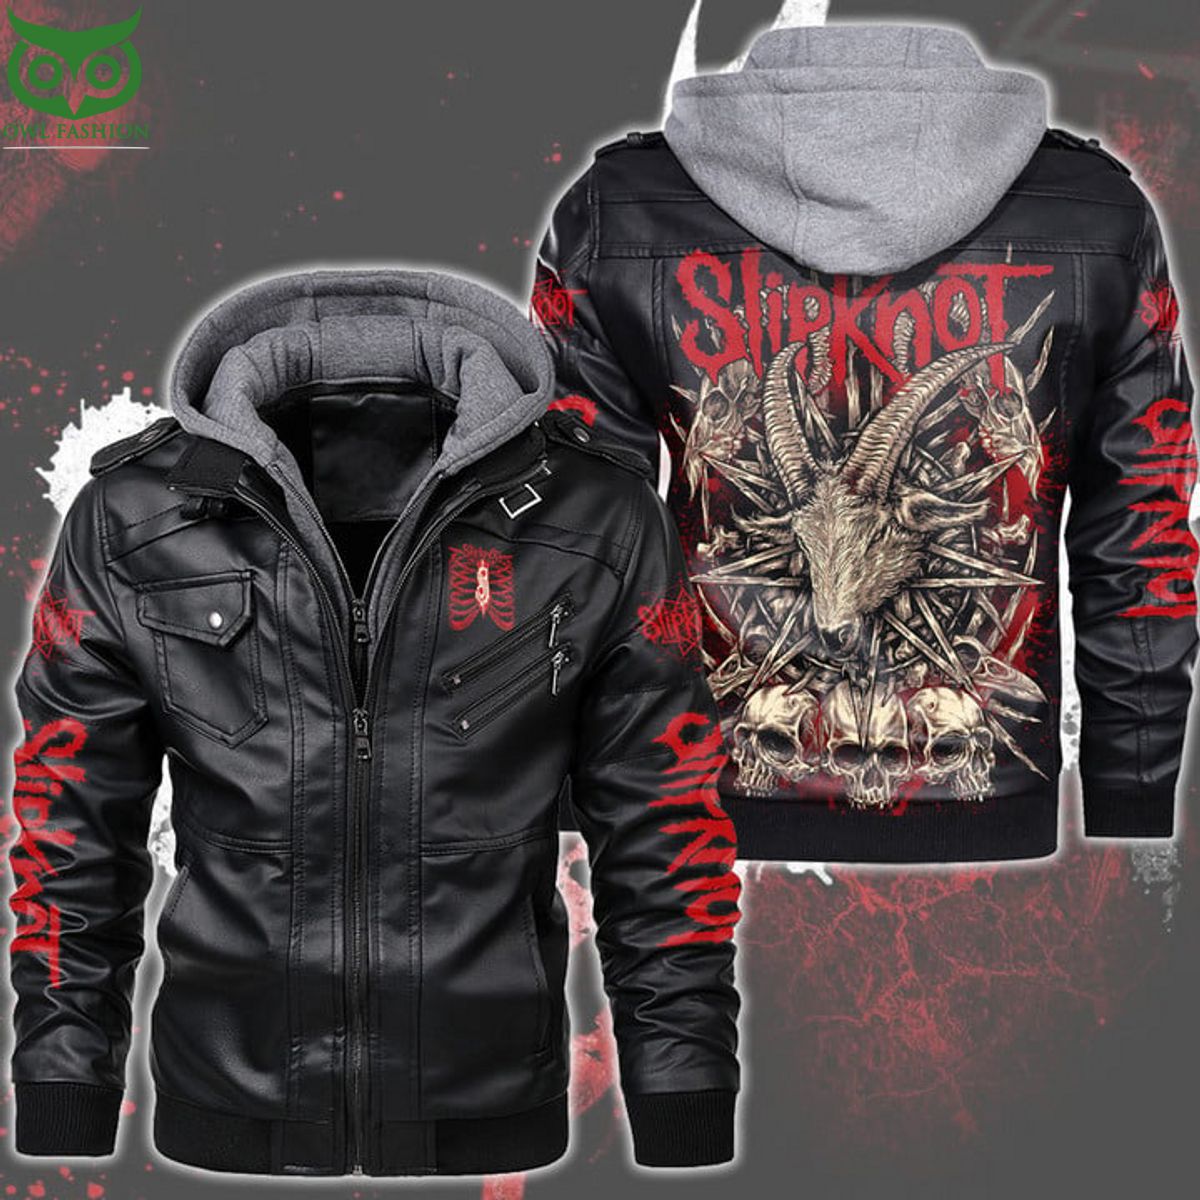 Hot Slipknot Music Rock Band leather jacket